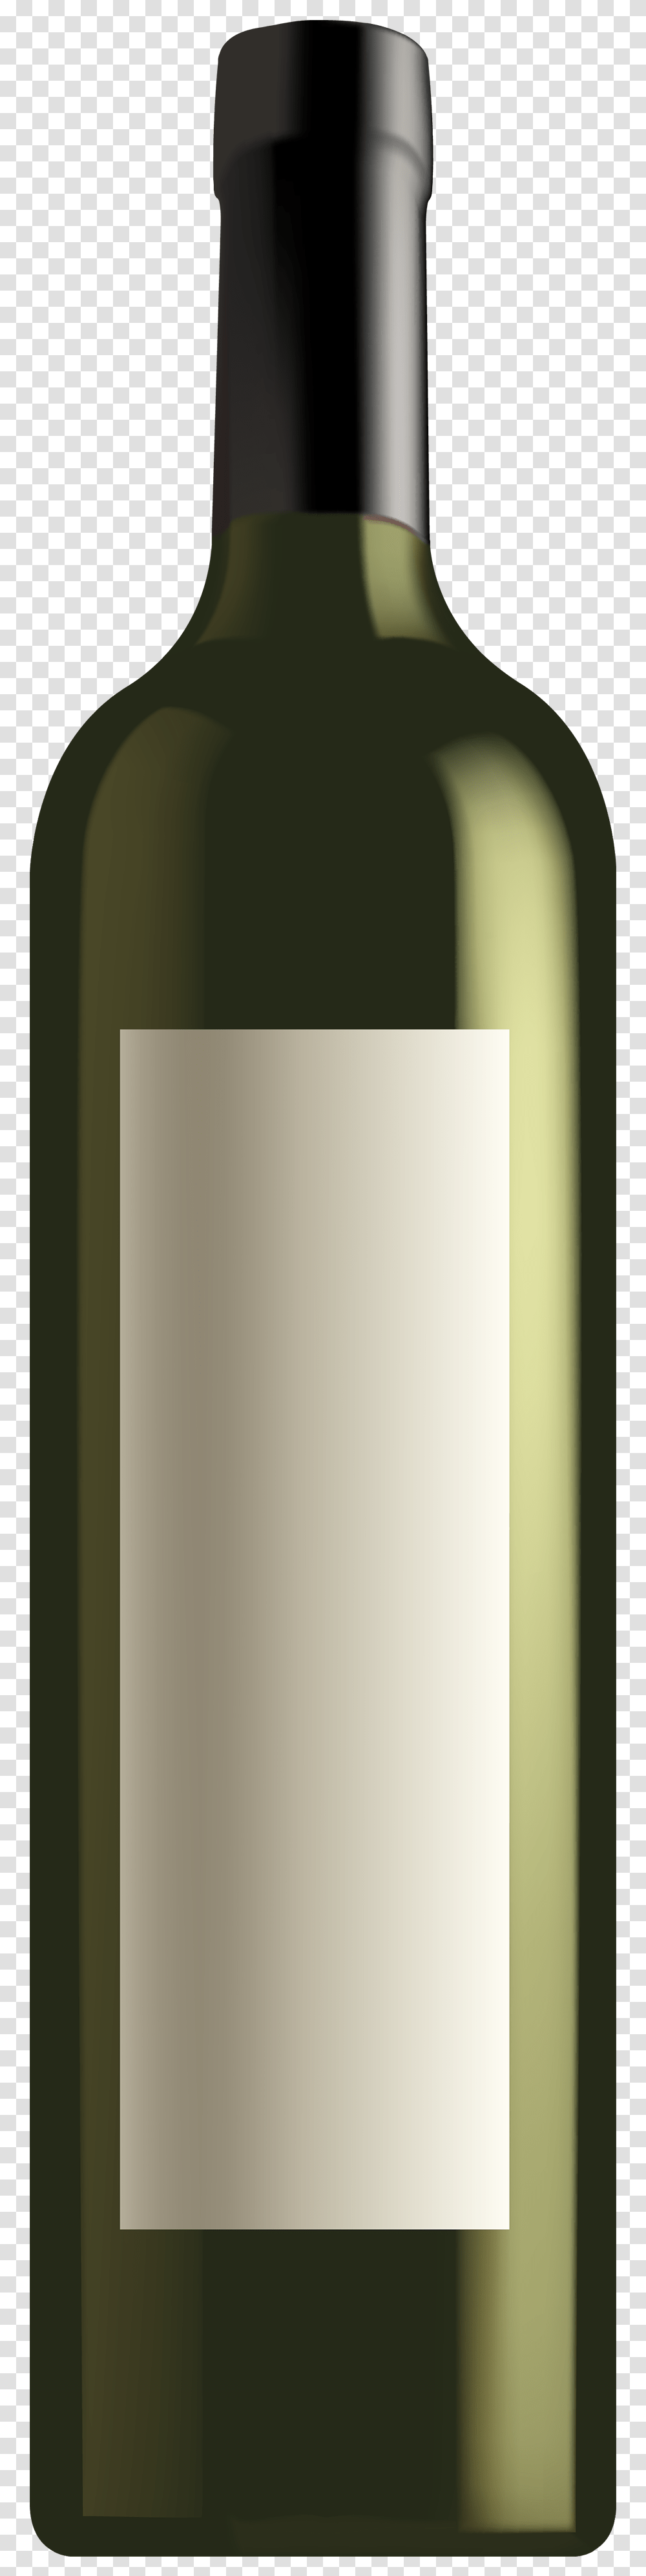 Wine Bottle Wine Clip Art Image Green Wine Bottle, Alcohol, Beverage, Drink, Red Wine Transparent Png